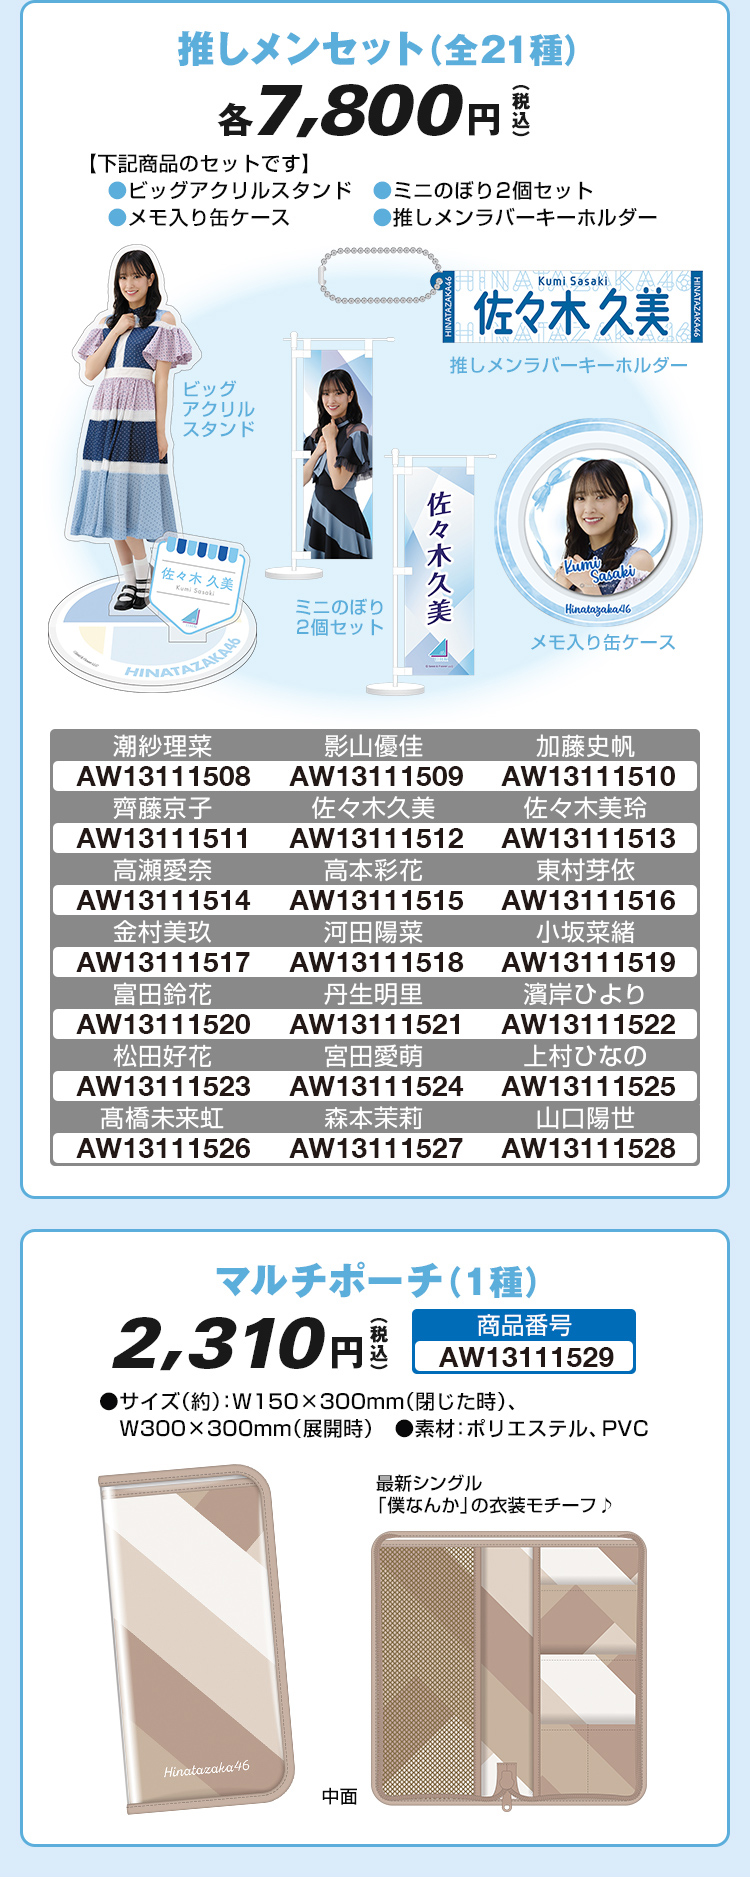 日向坂46 @Loppi・HMV限定グッズ クリアポスターBOXセット